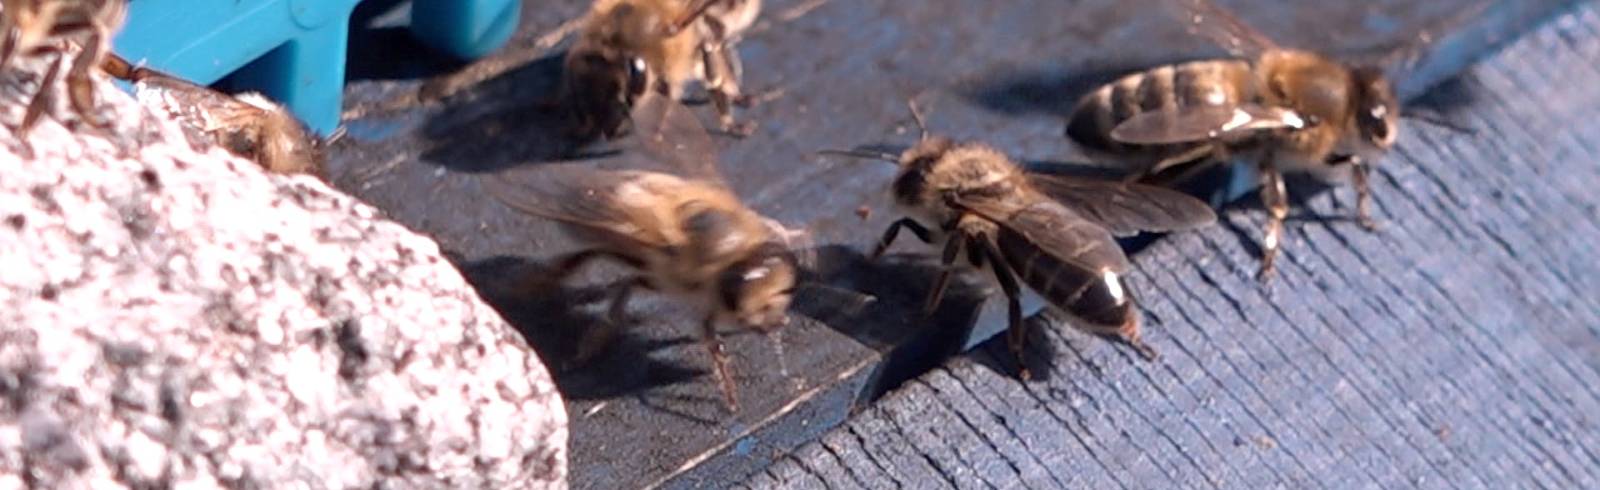 Hietzing: Honig von den Friedhofsbienen